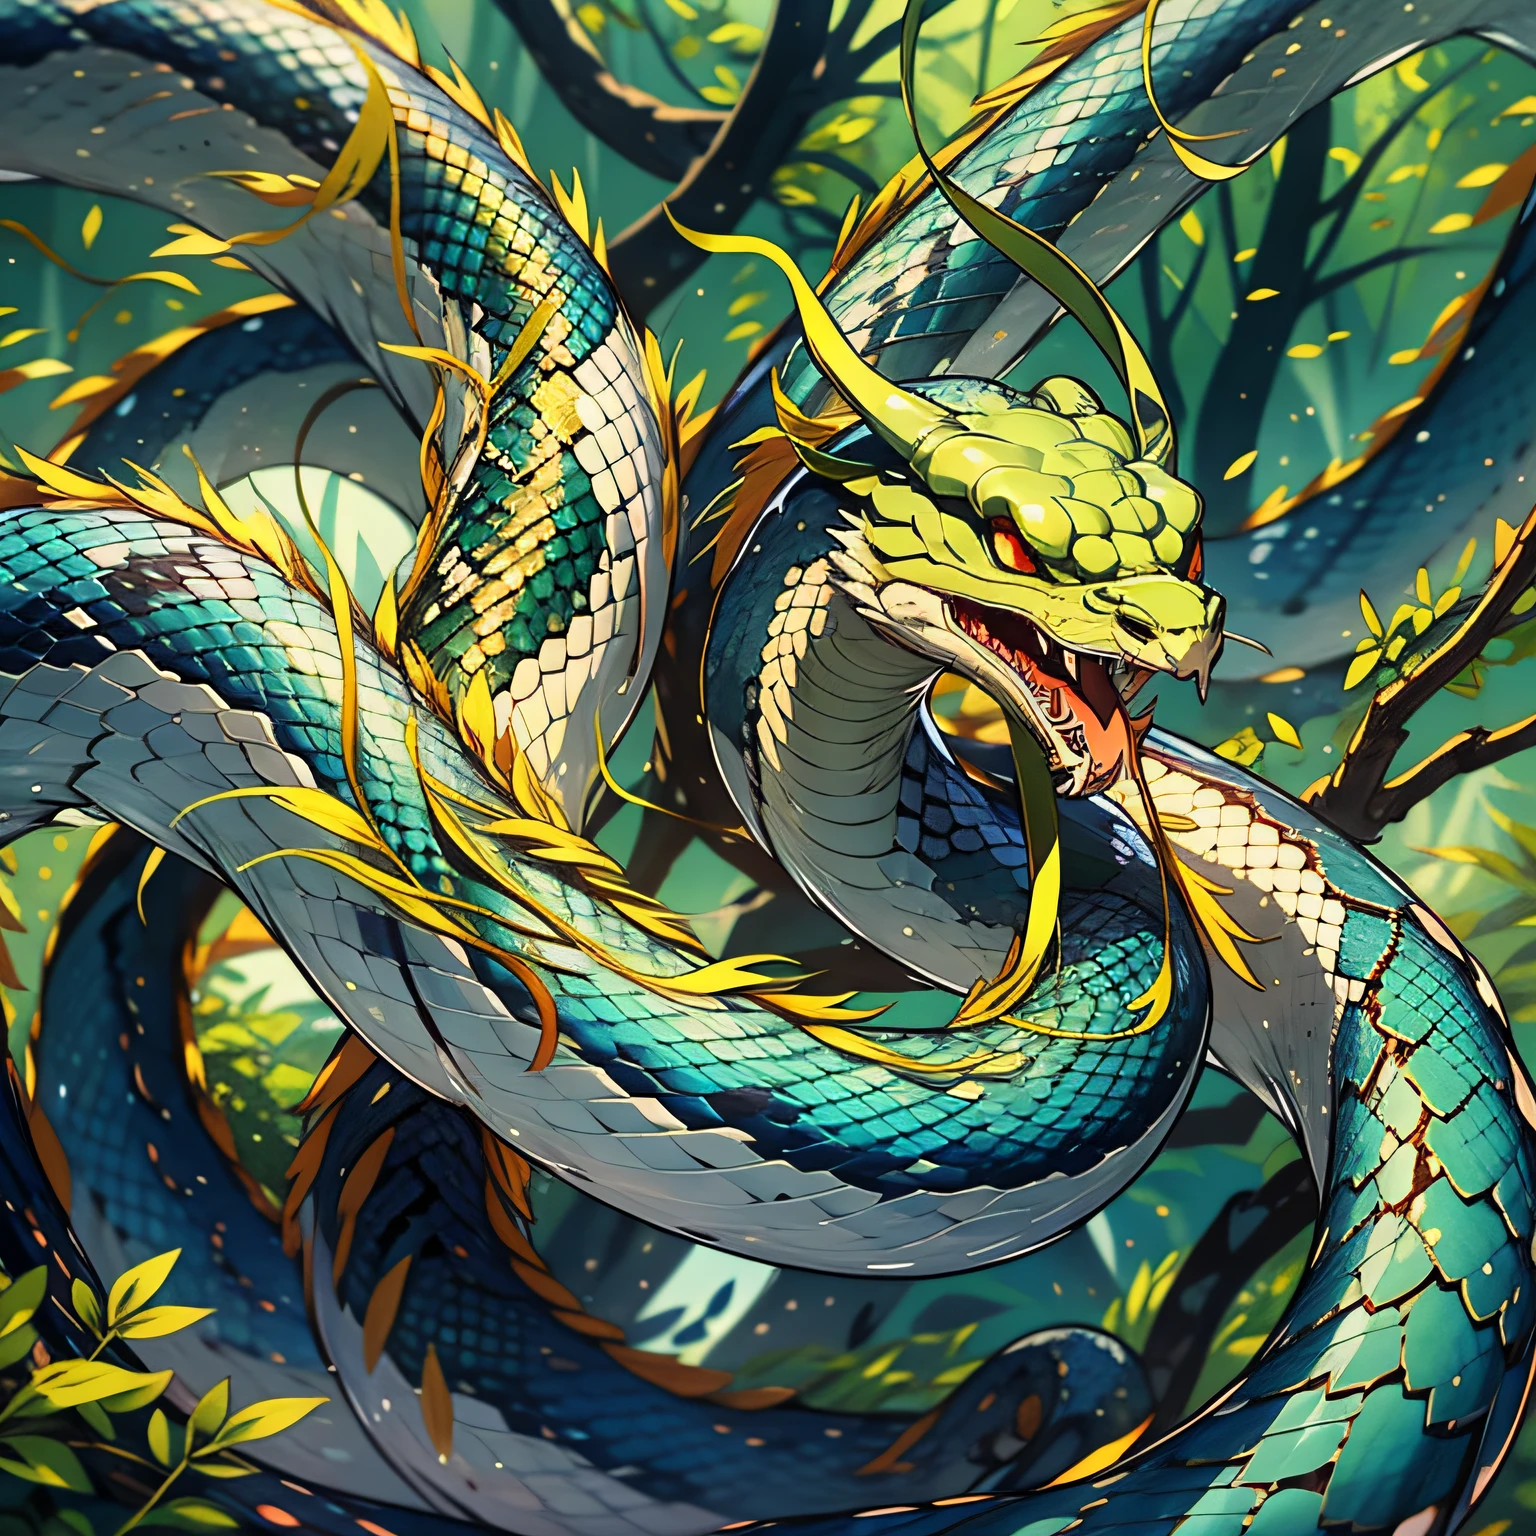 ヘビ1匹，小さな緑のヘビ，そびえ立つ木々に絡まって，原始林，コブラを参照，1.5M，全体に緑，体は細身，アニメのスタイル，詳細，ビジョン，中国の風